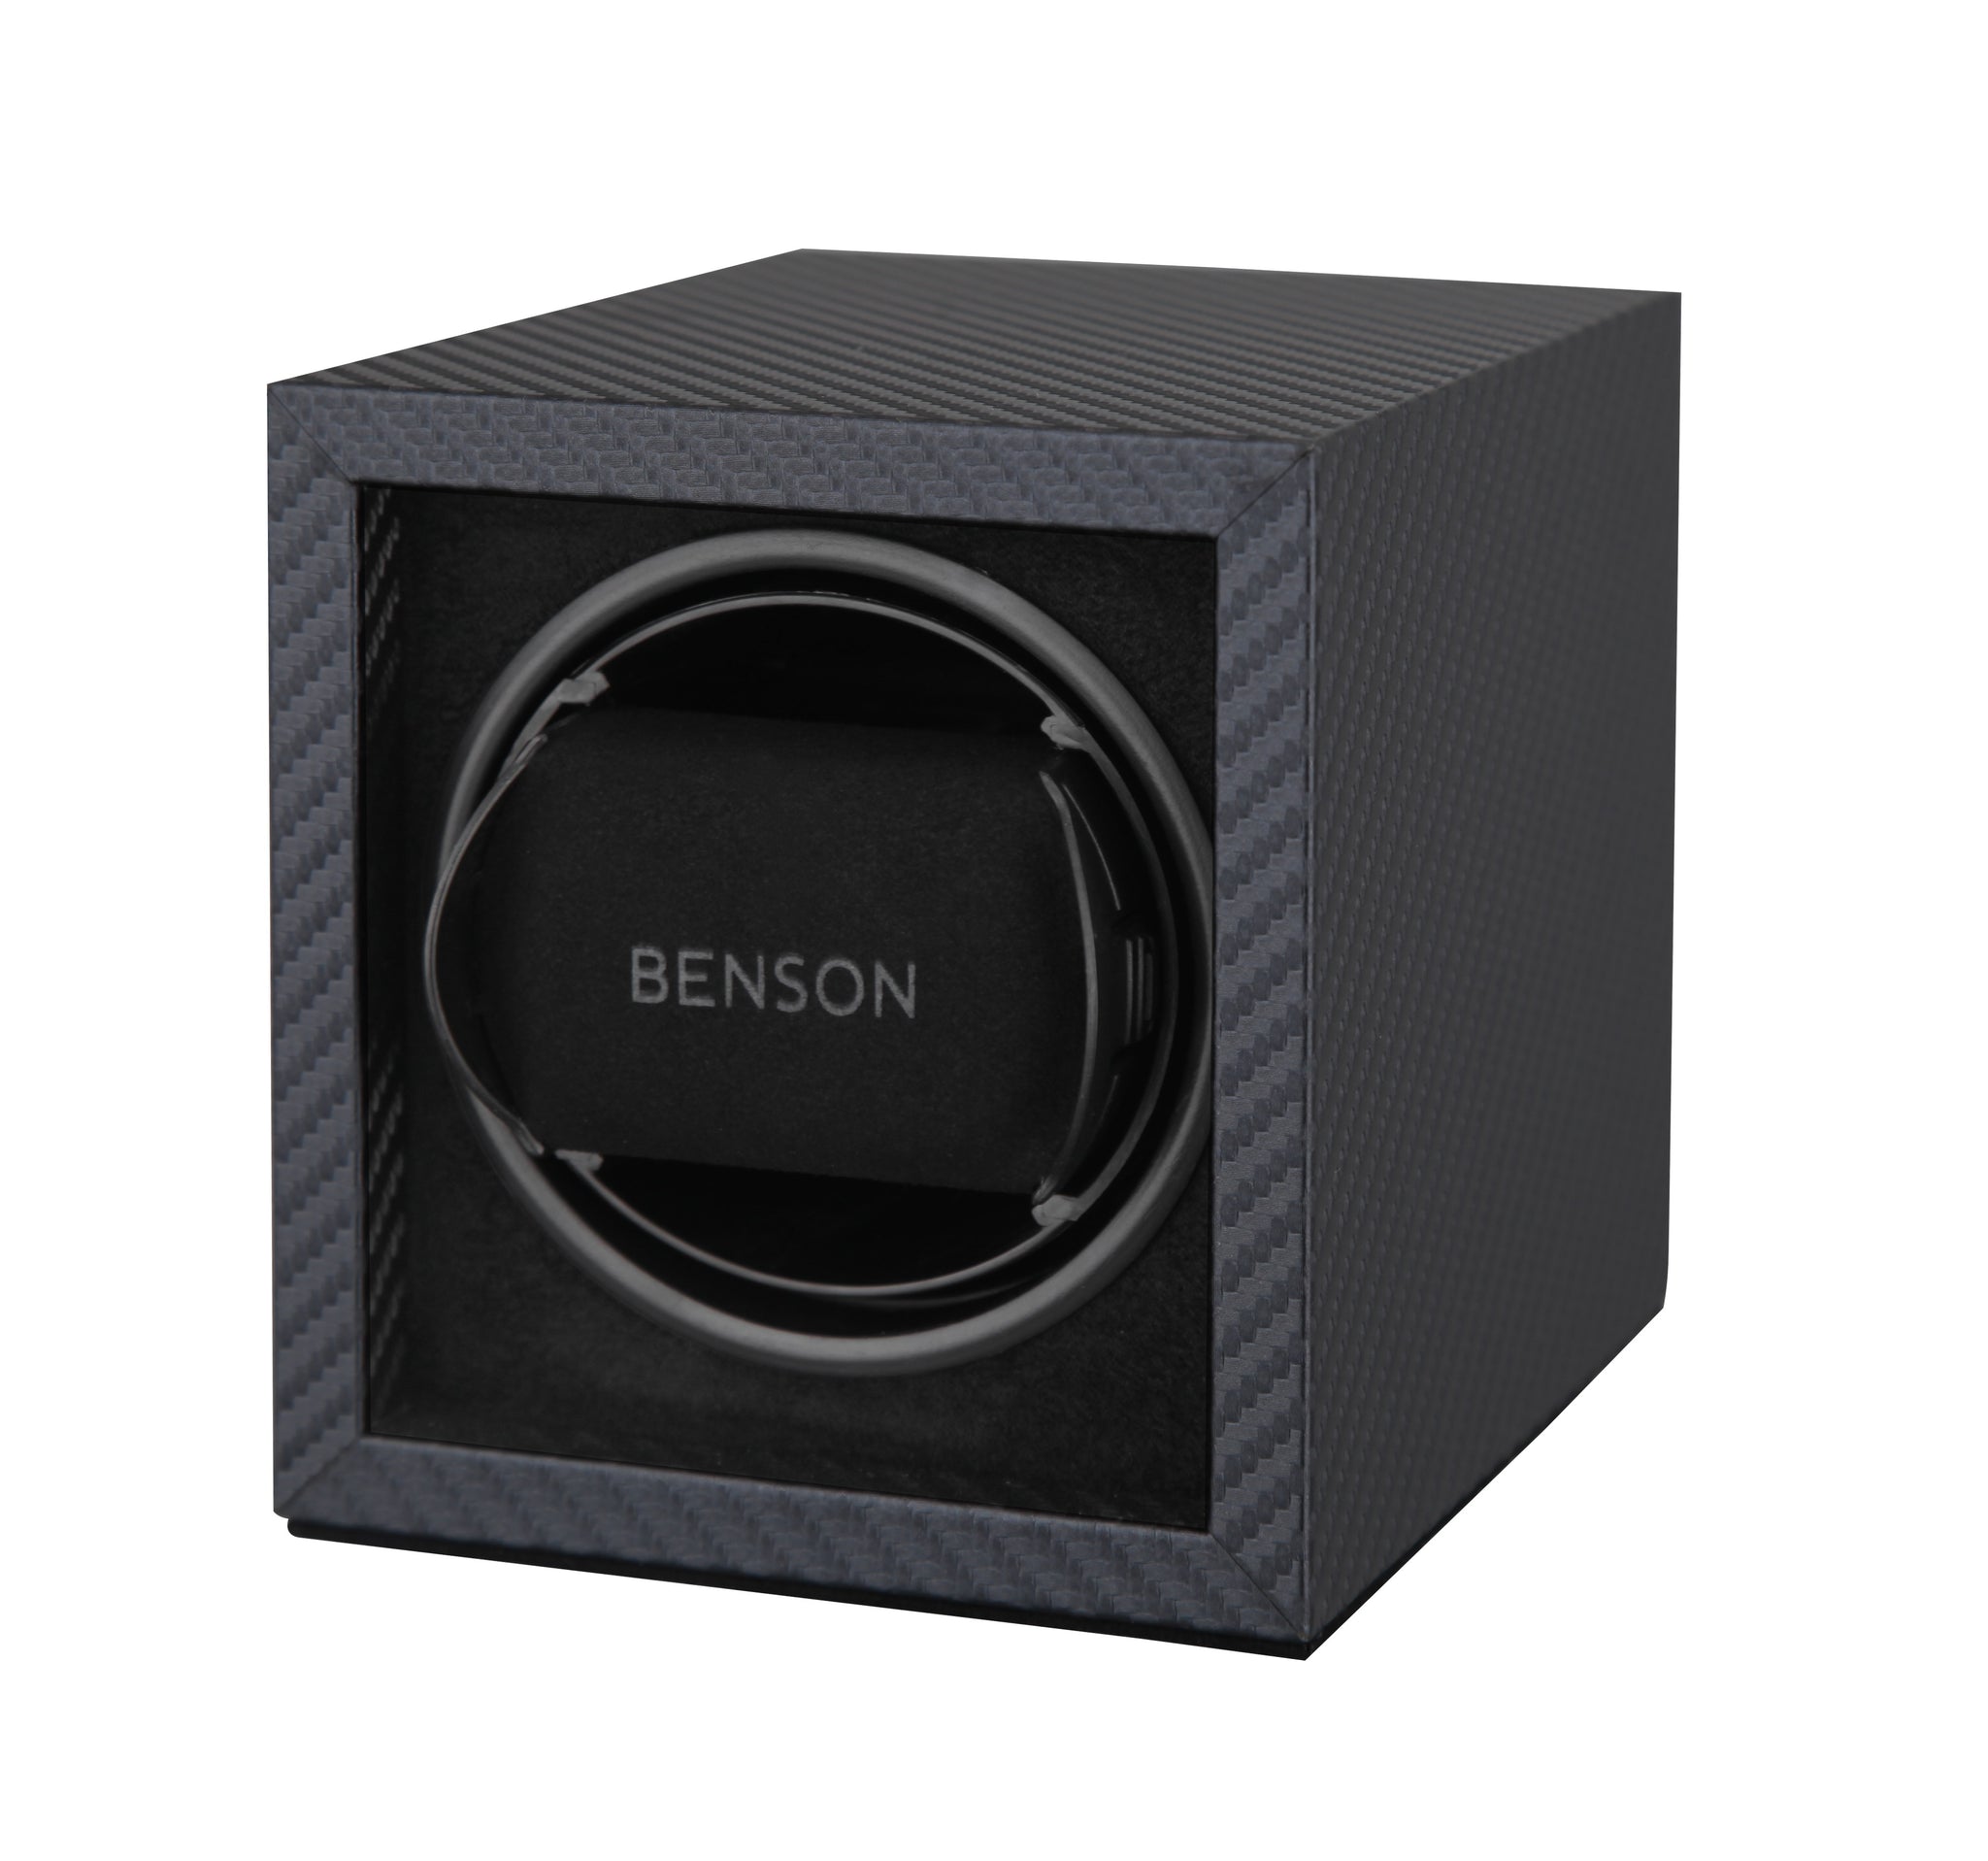 Remontoir de montre simple de la série Benson Compact